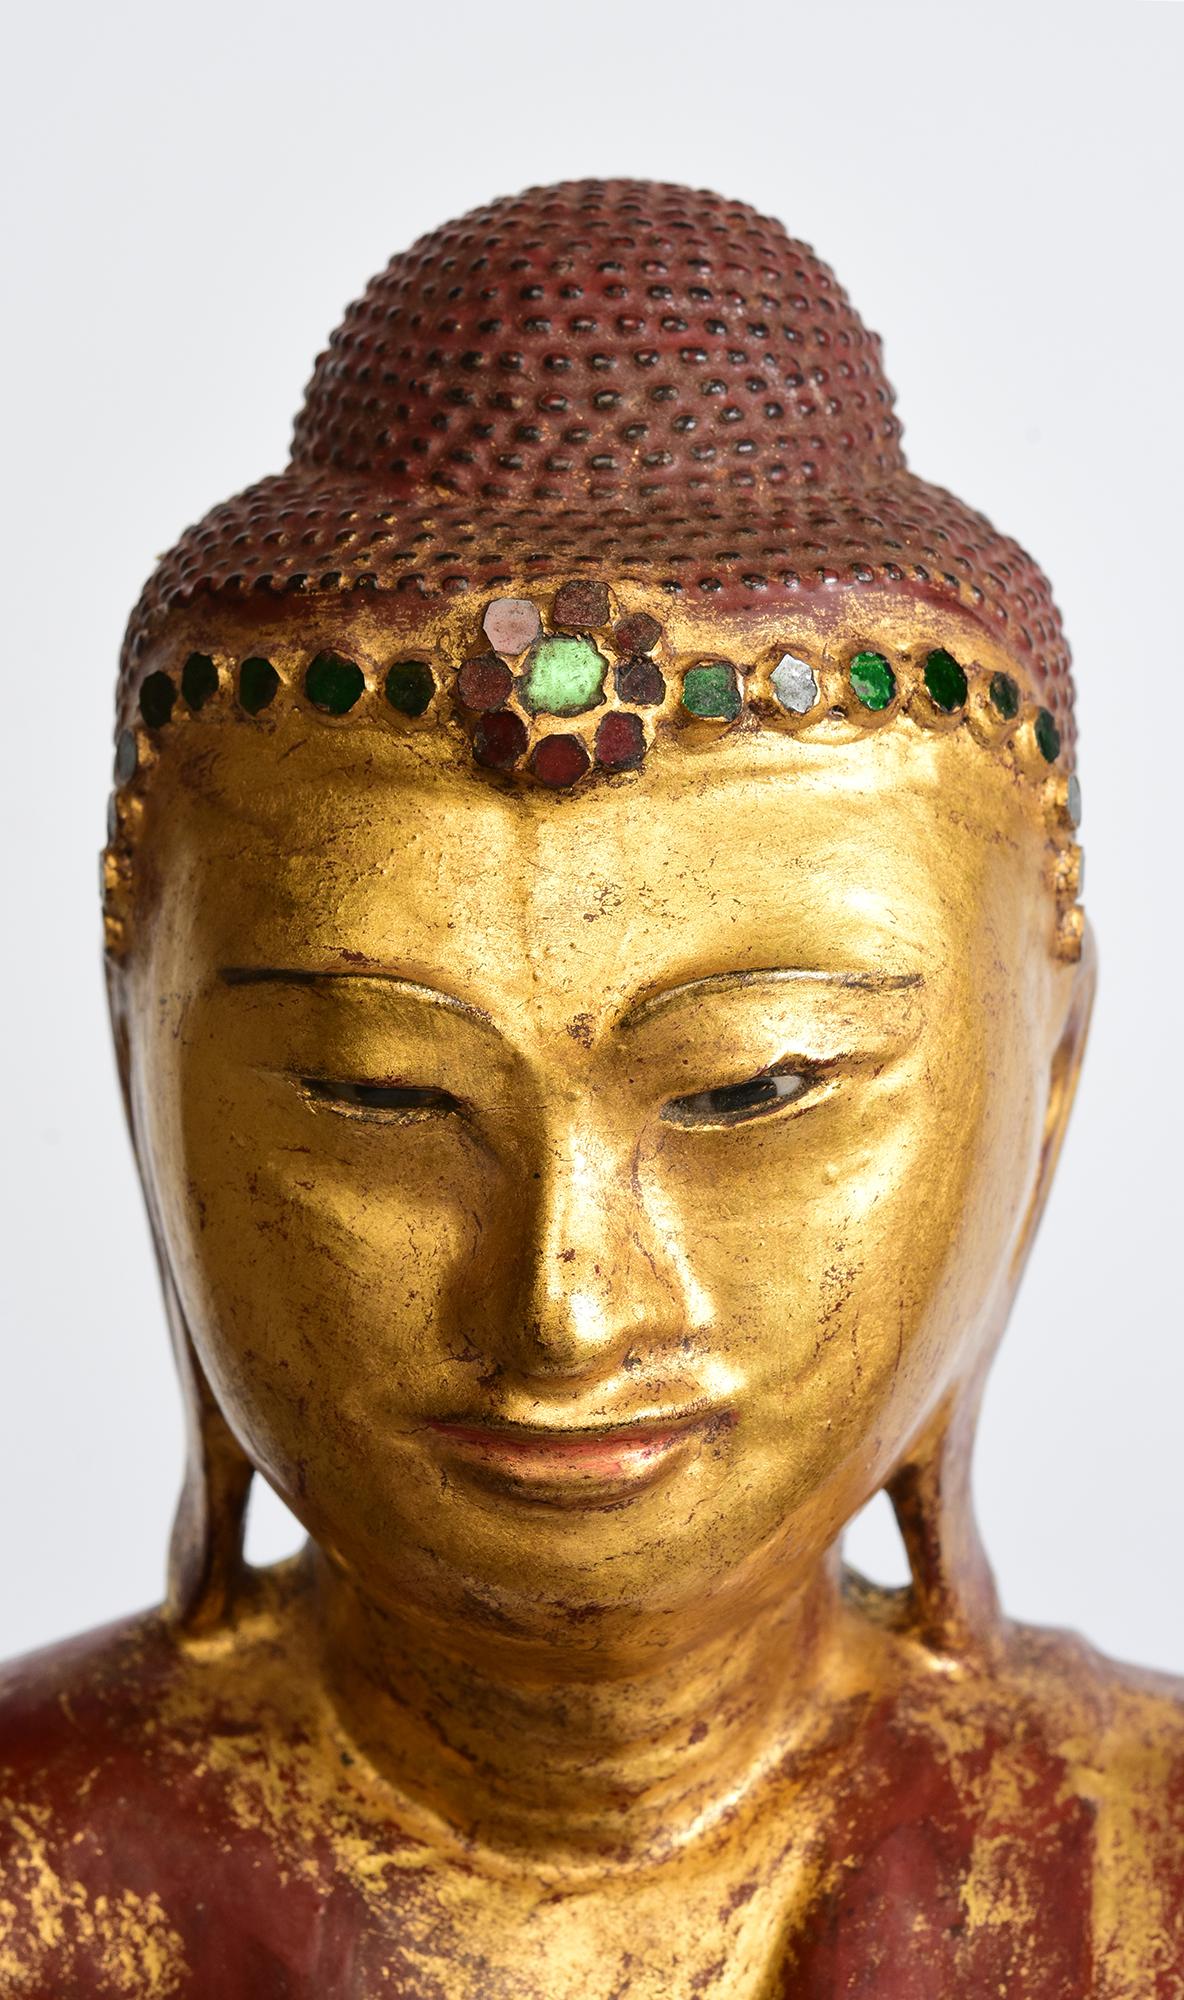 Antiker burmesischer Holzbuddha auf einem Lotussockel, vergoldet und mit bunten Glasstücken am Stirnband versehen.

Alter: Birma, Mandalay-Periode, 19. Jahrhundert
Größe: Höhe 52,2 C.M. / Breite 25,3 C.M.
Höhe mit Ständer: 71.2 C.M.
Zustand: